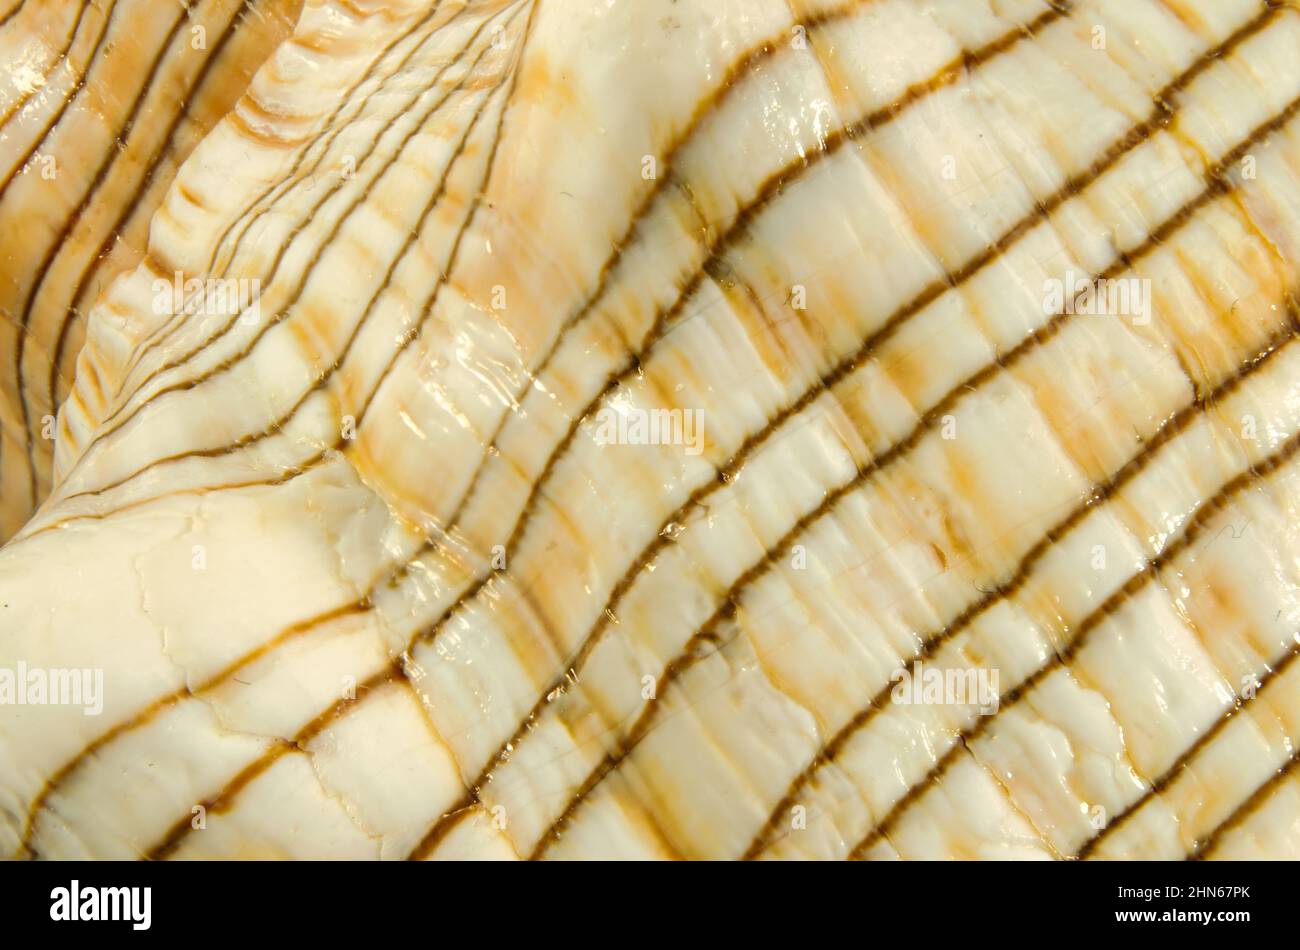 Pleoroploca trapezium shell (Linnaeus, 1758) common name : the trapezium horse conch or striped fox conch. Family: Fasciolariidae, class:Gastropoda. Stock Photo